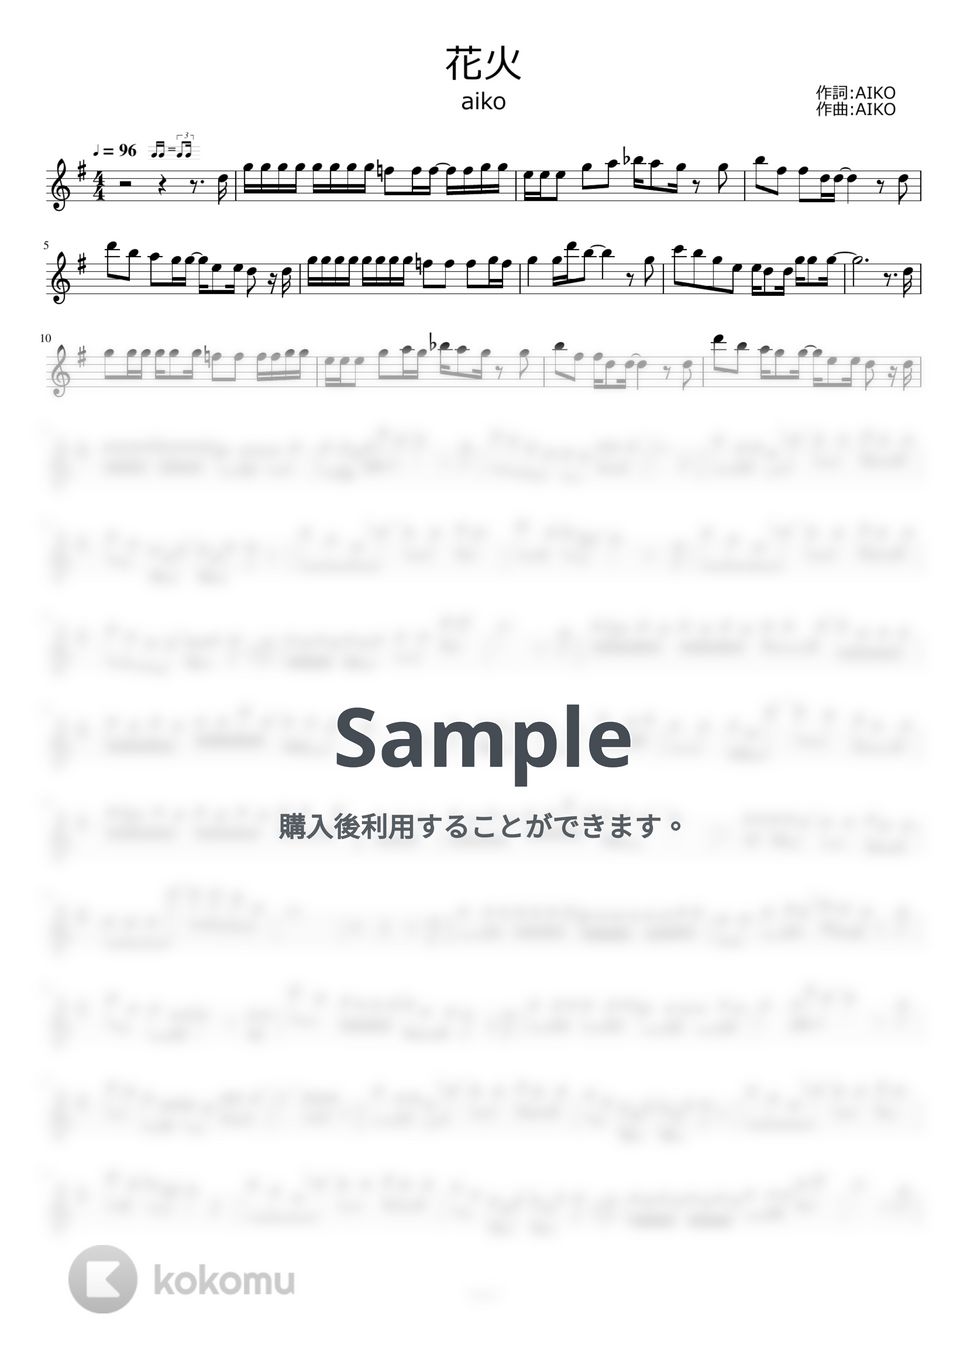 aiko - 花火 by ayako music school